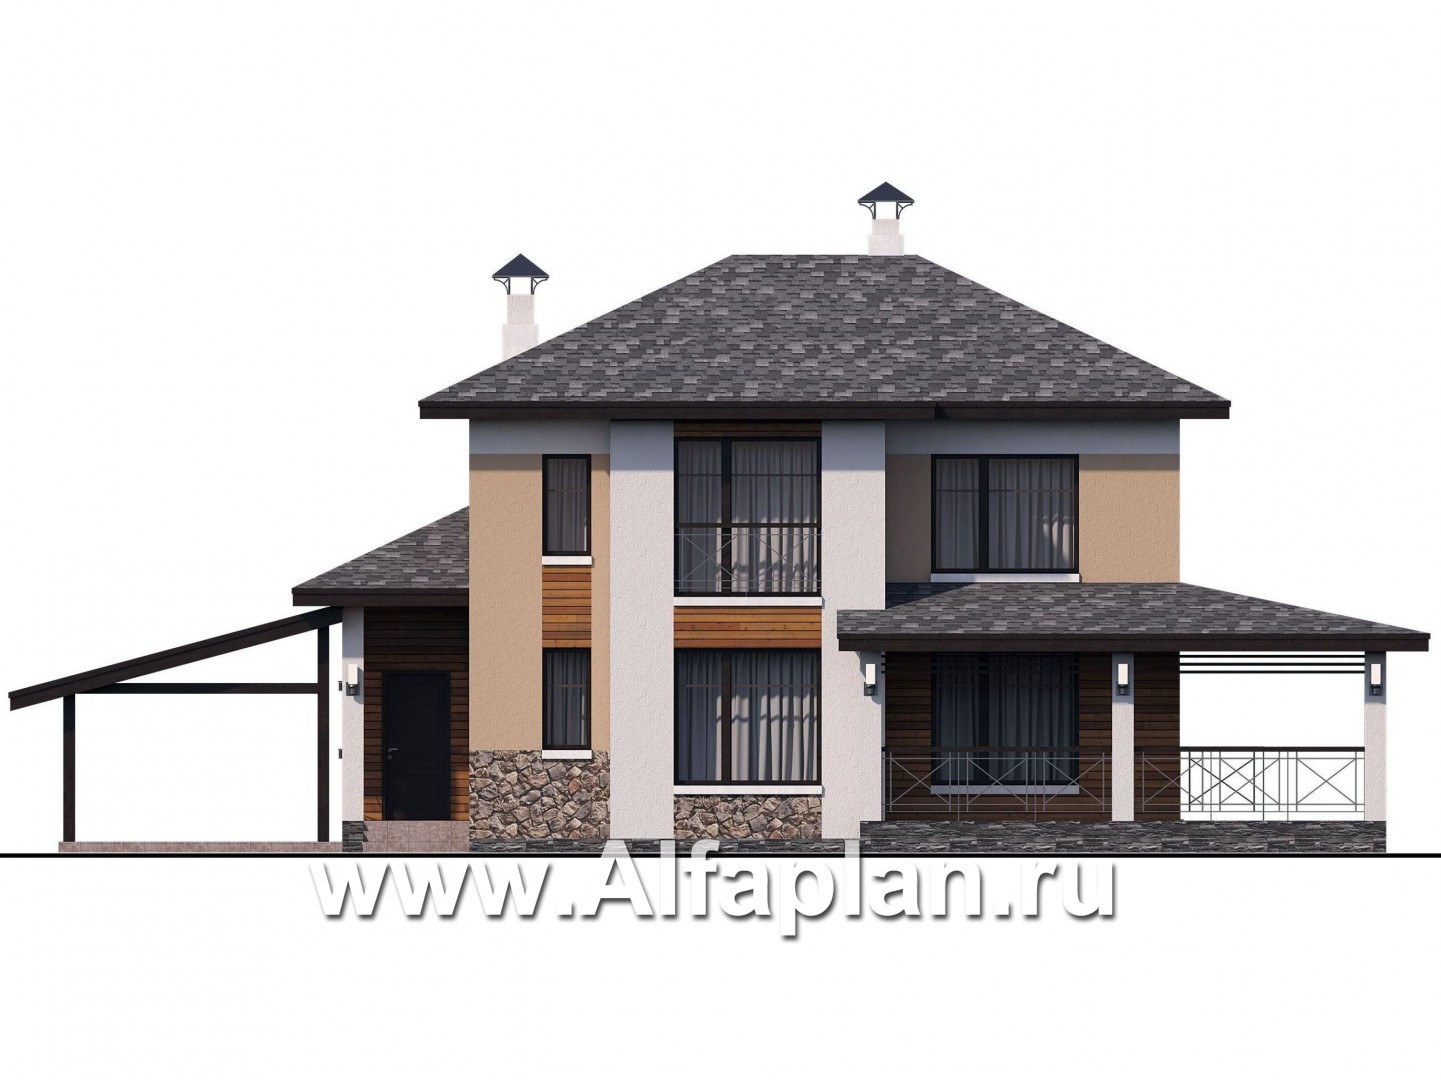 Проекты домов Альфаплан - «Стимул» - проект двухэтажного дома с угловой террасой, планировка с кабинетом на 1 эт, в современном стиле, с навесом на 1 авто - изображение фасада №1